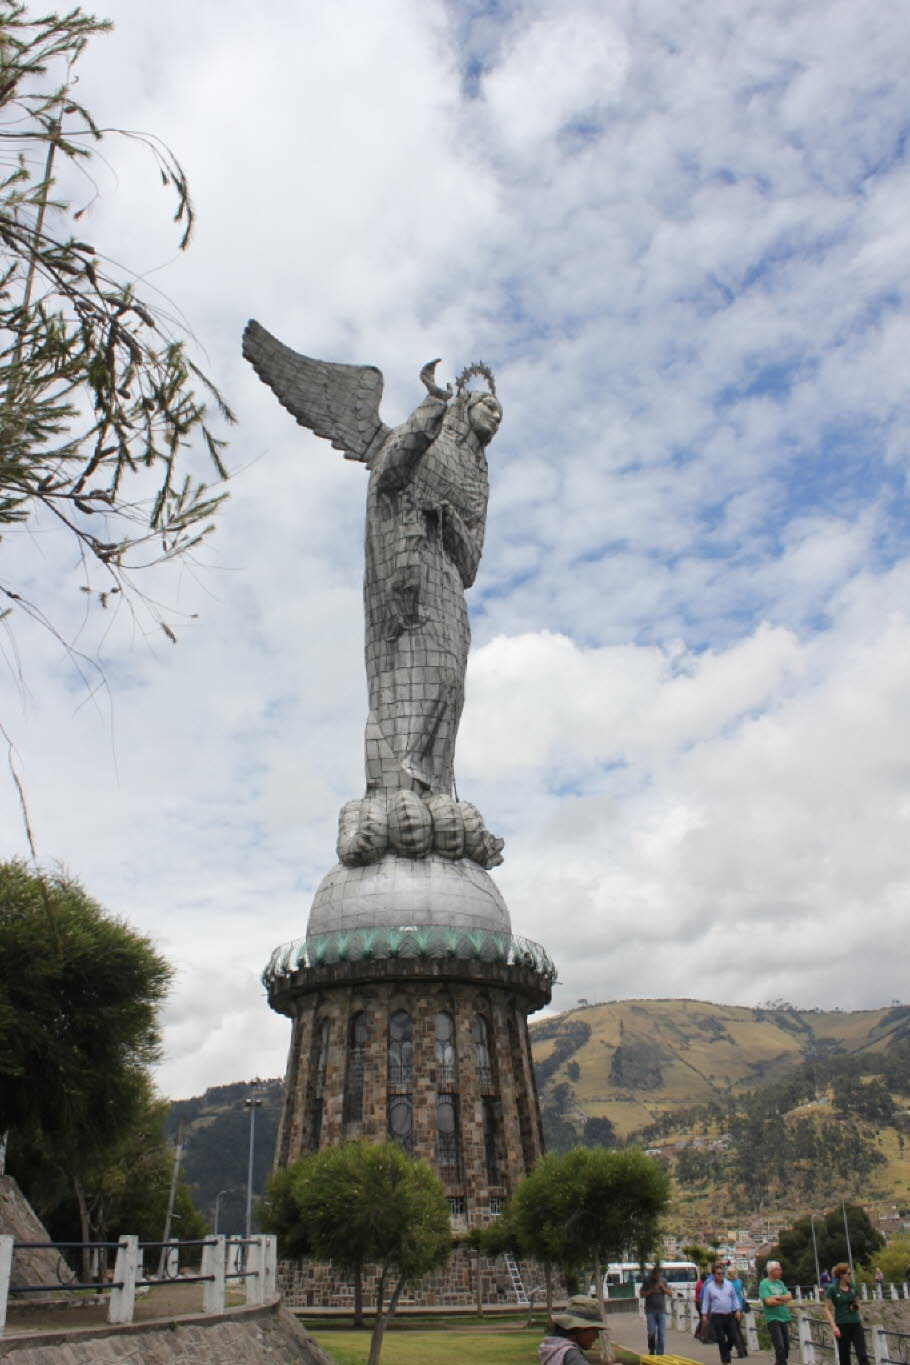 El Panecillo (deutsch das Brötchen) ist der Name eines Hügels mitten in Quito, der Hauptstadt Ecuadors. Quito liegt bereits über 2.800 Meter über dem Meeresspiegel. El Panecillo erhebt sich nochmals etwa 200 weitere Meter und erreicht insgesamt eine Höhe 